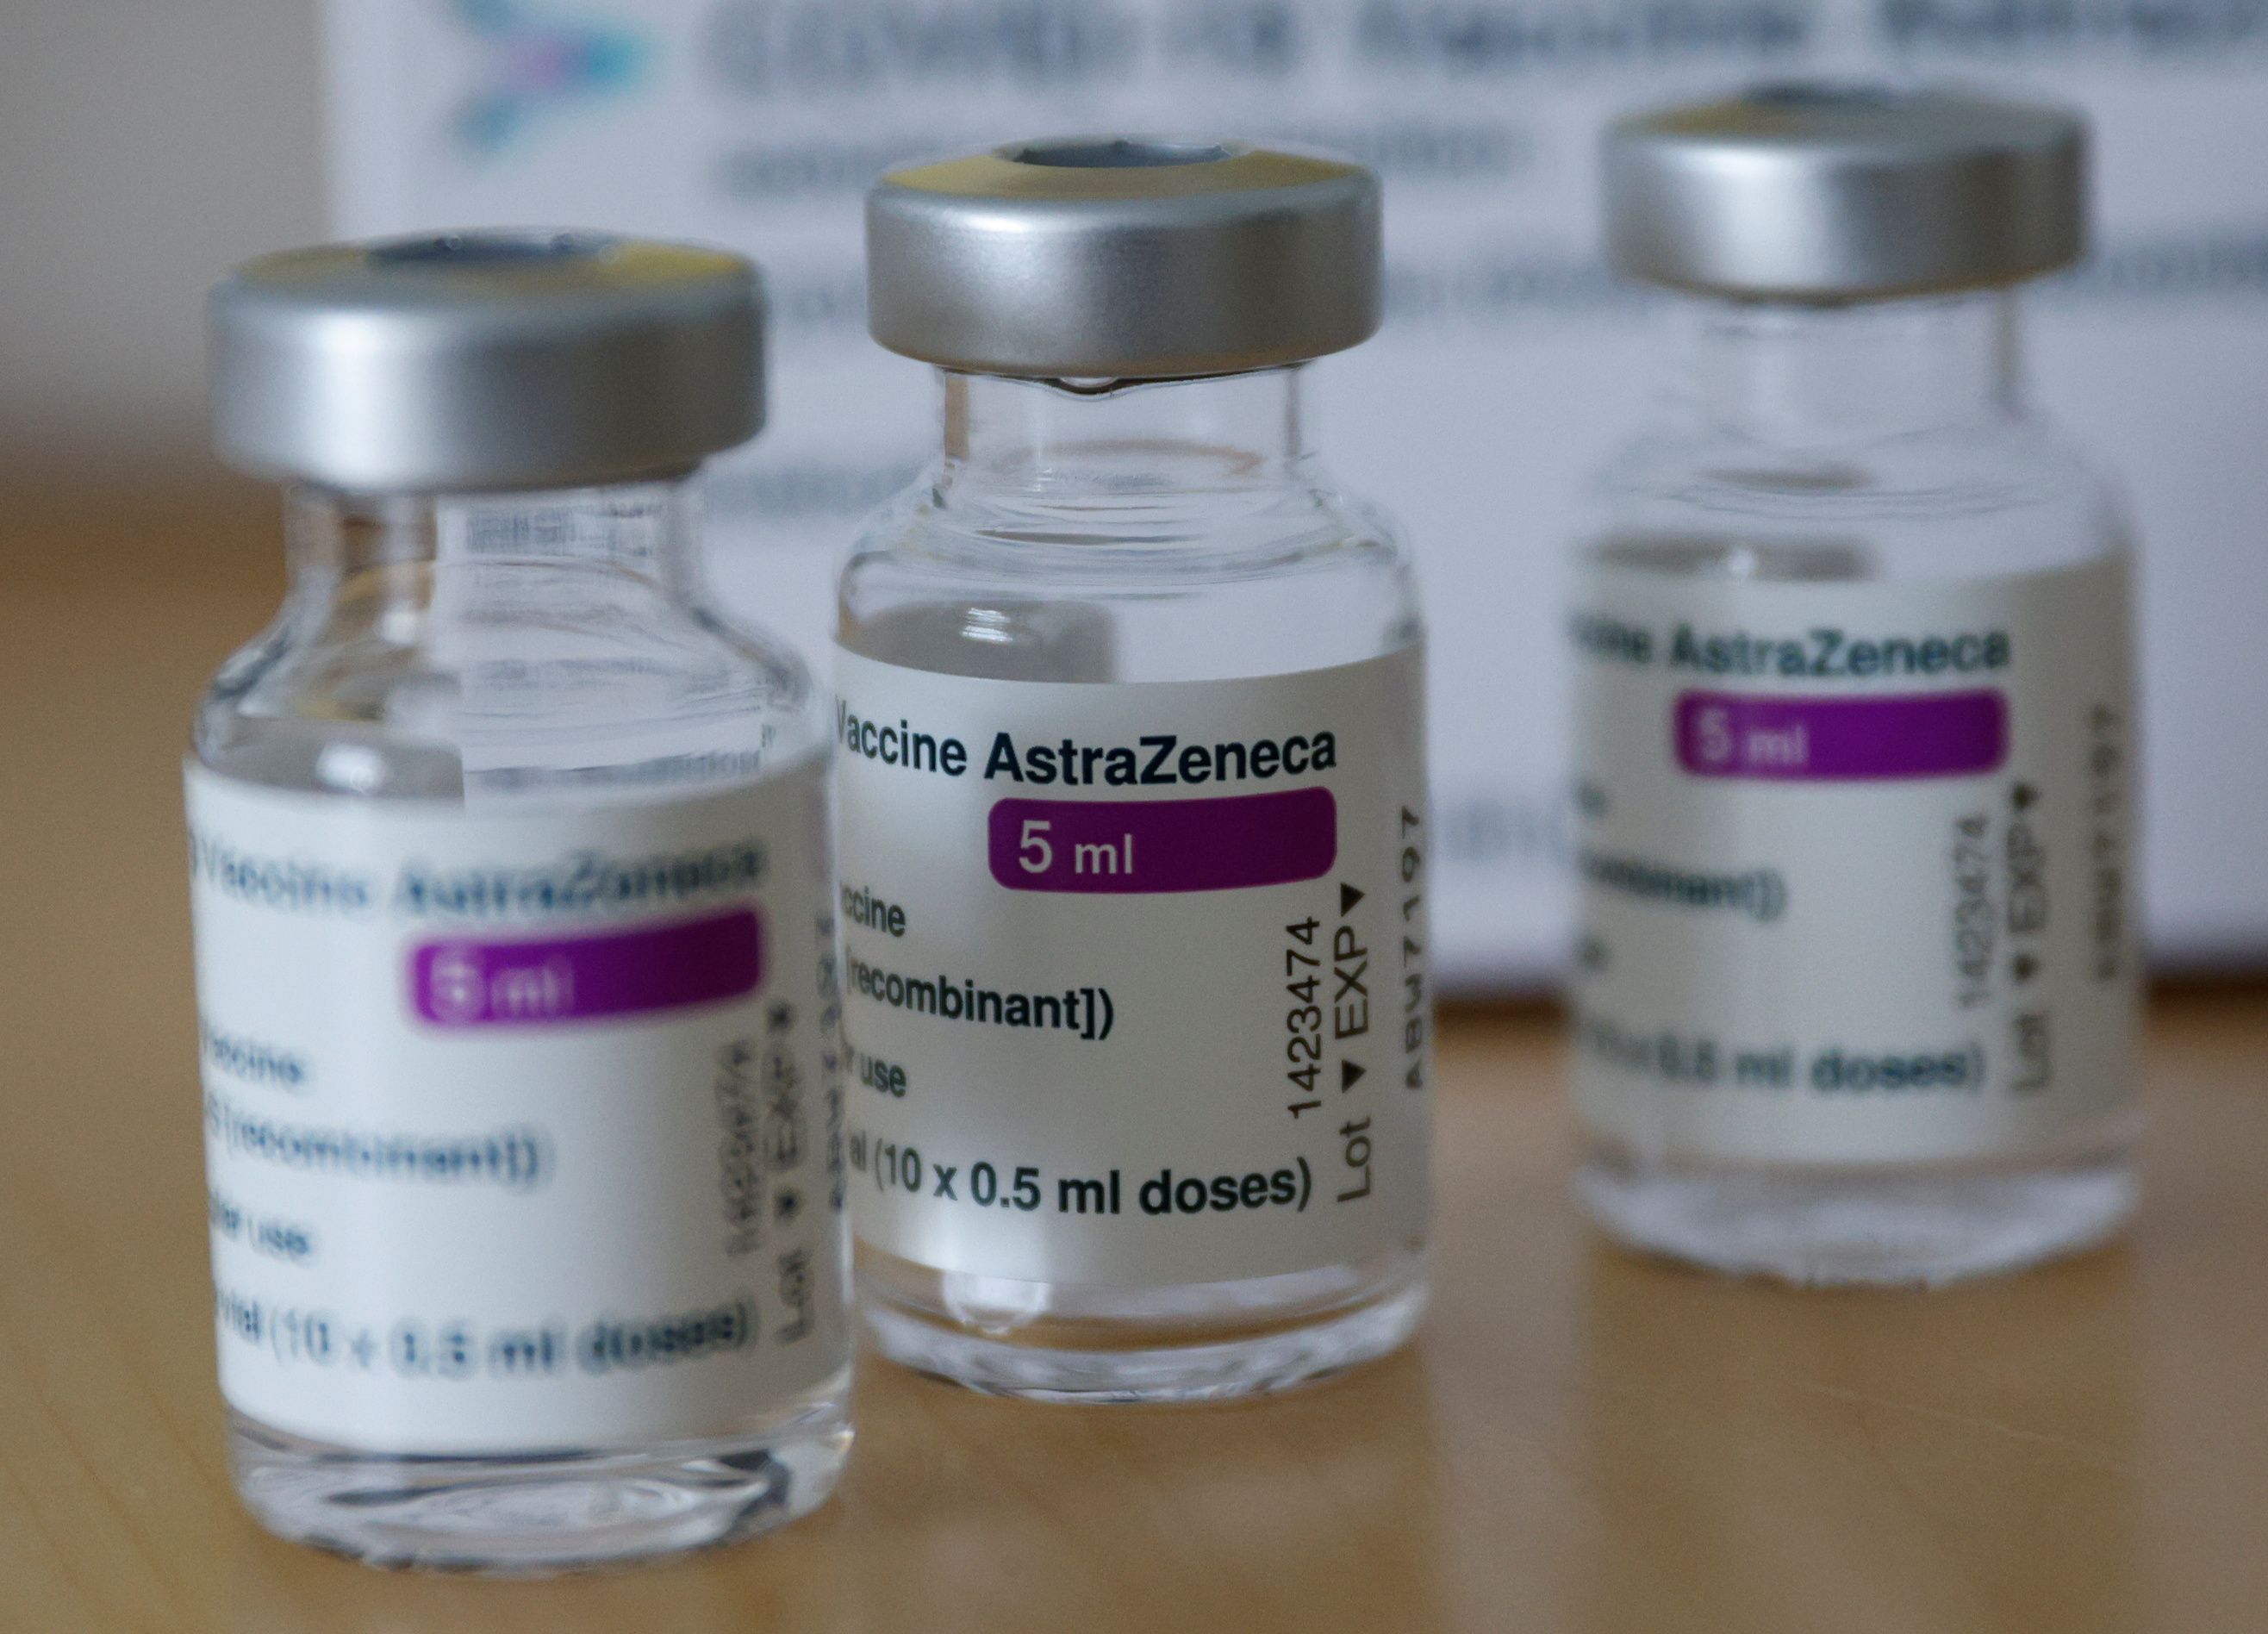 No es seguro darse la vacuna de AstraZeneca. Prohibición total en Europa por severos casos de trombosis.